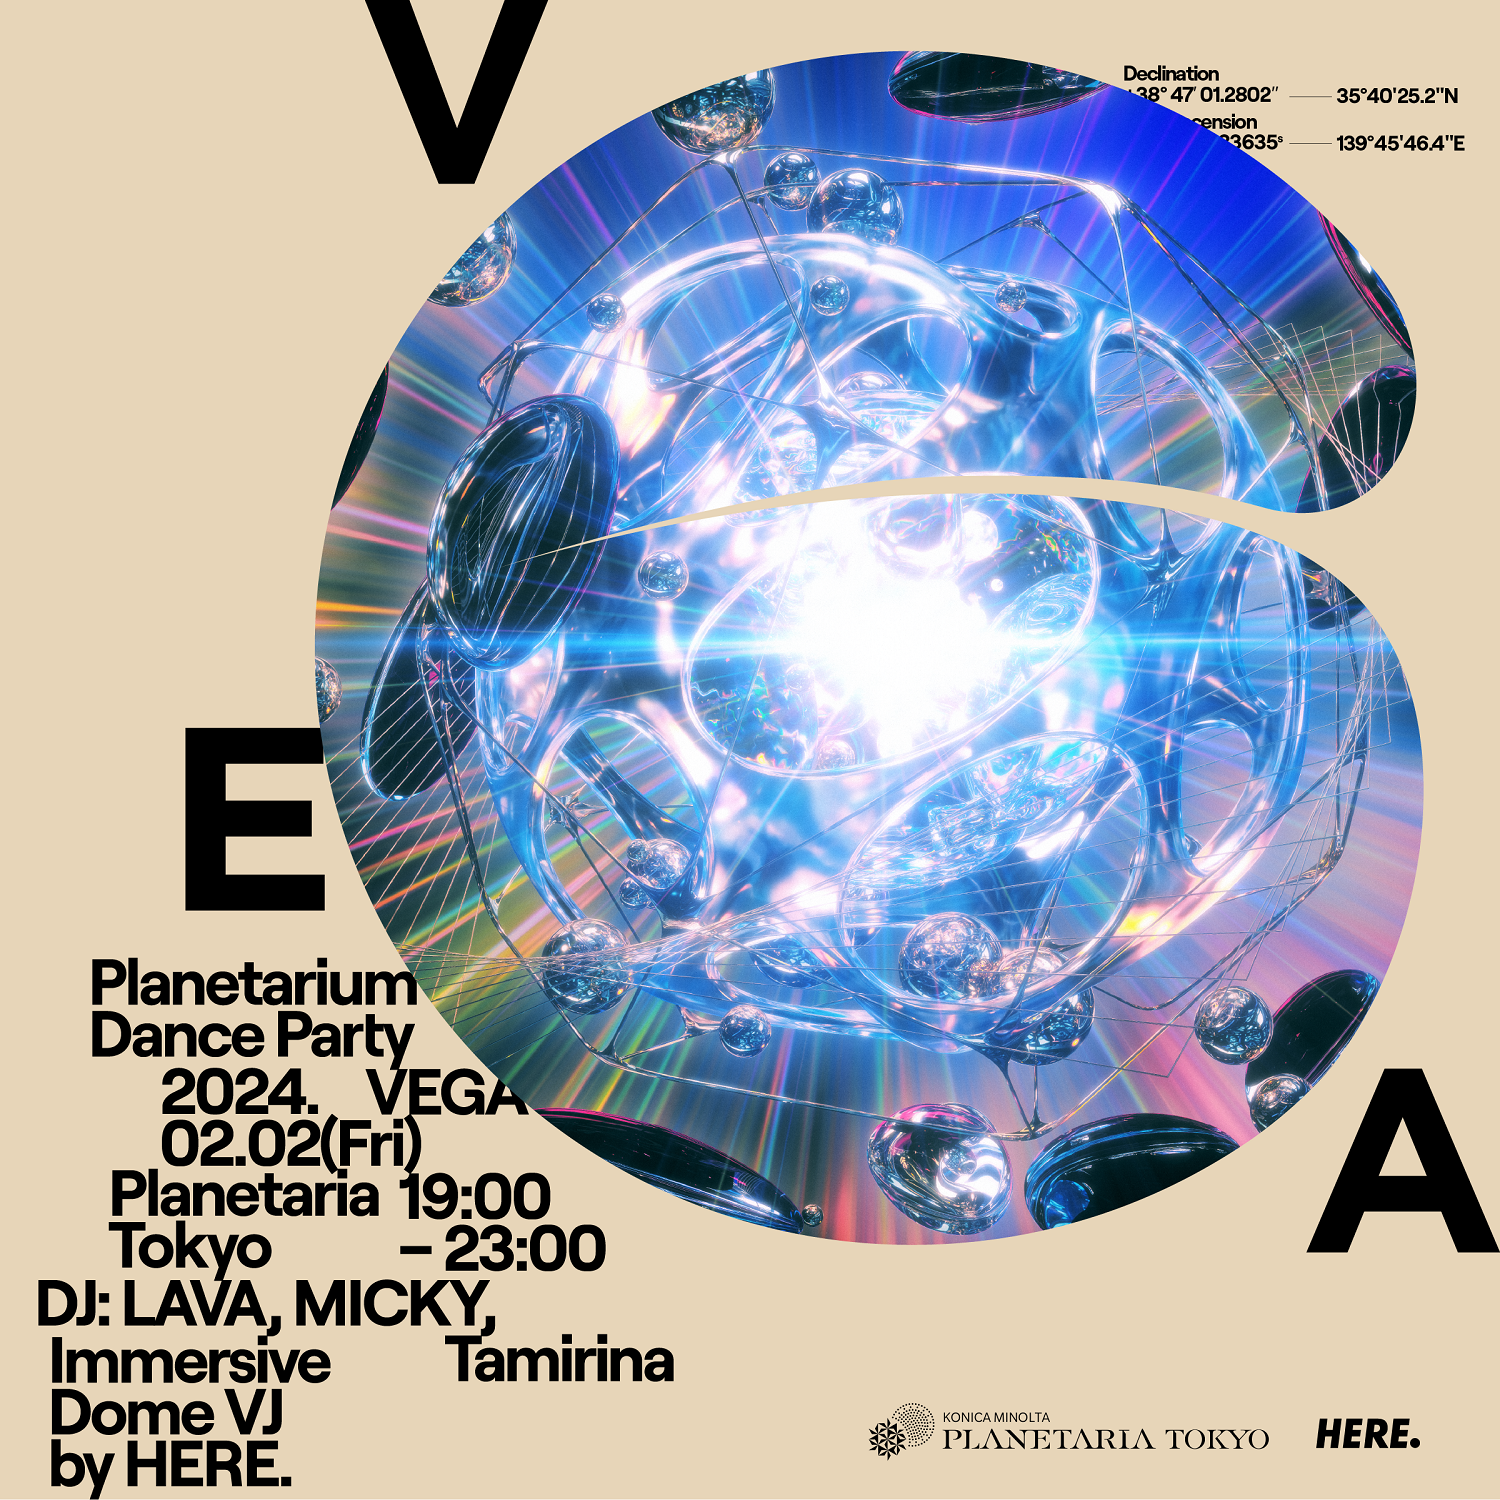 映像と音楽を身体全体で感じる
日本初のプラネタリウムダンスパーティ
「VEGA “Planetarium Dance Party”」
来年2月2日(金)に開催決定！